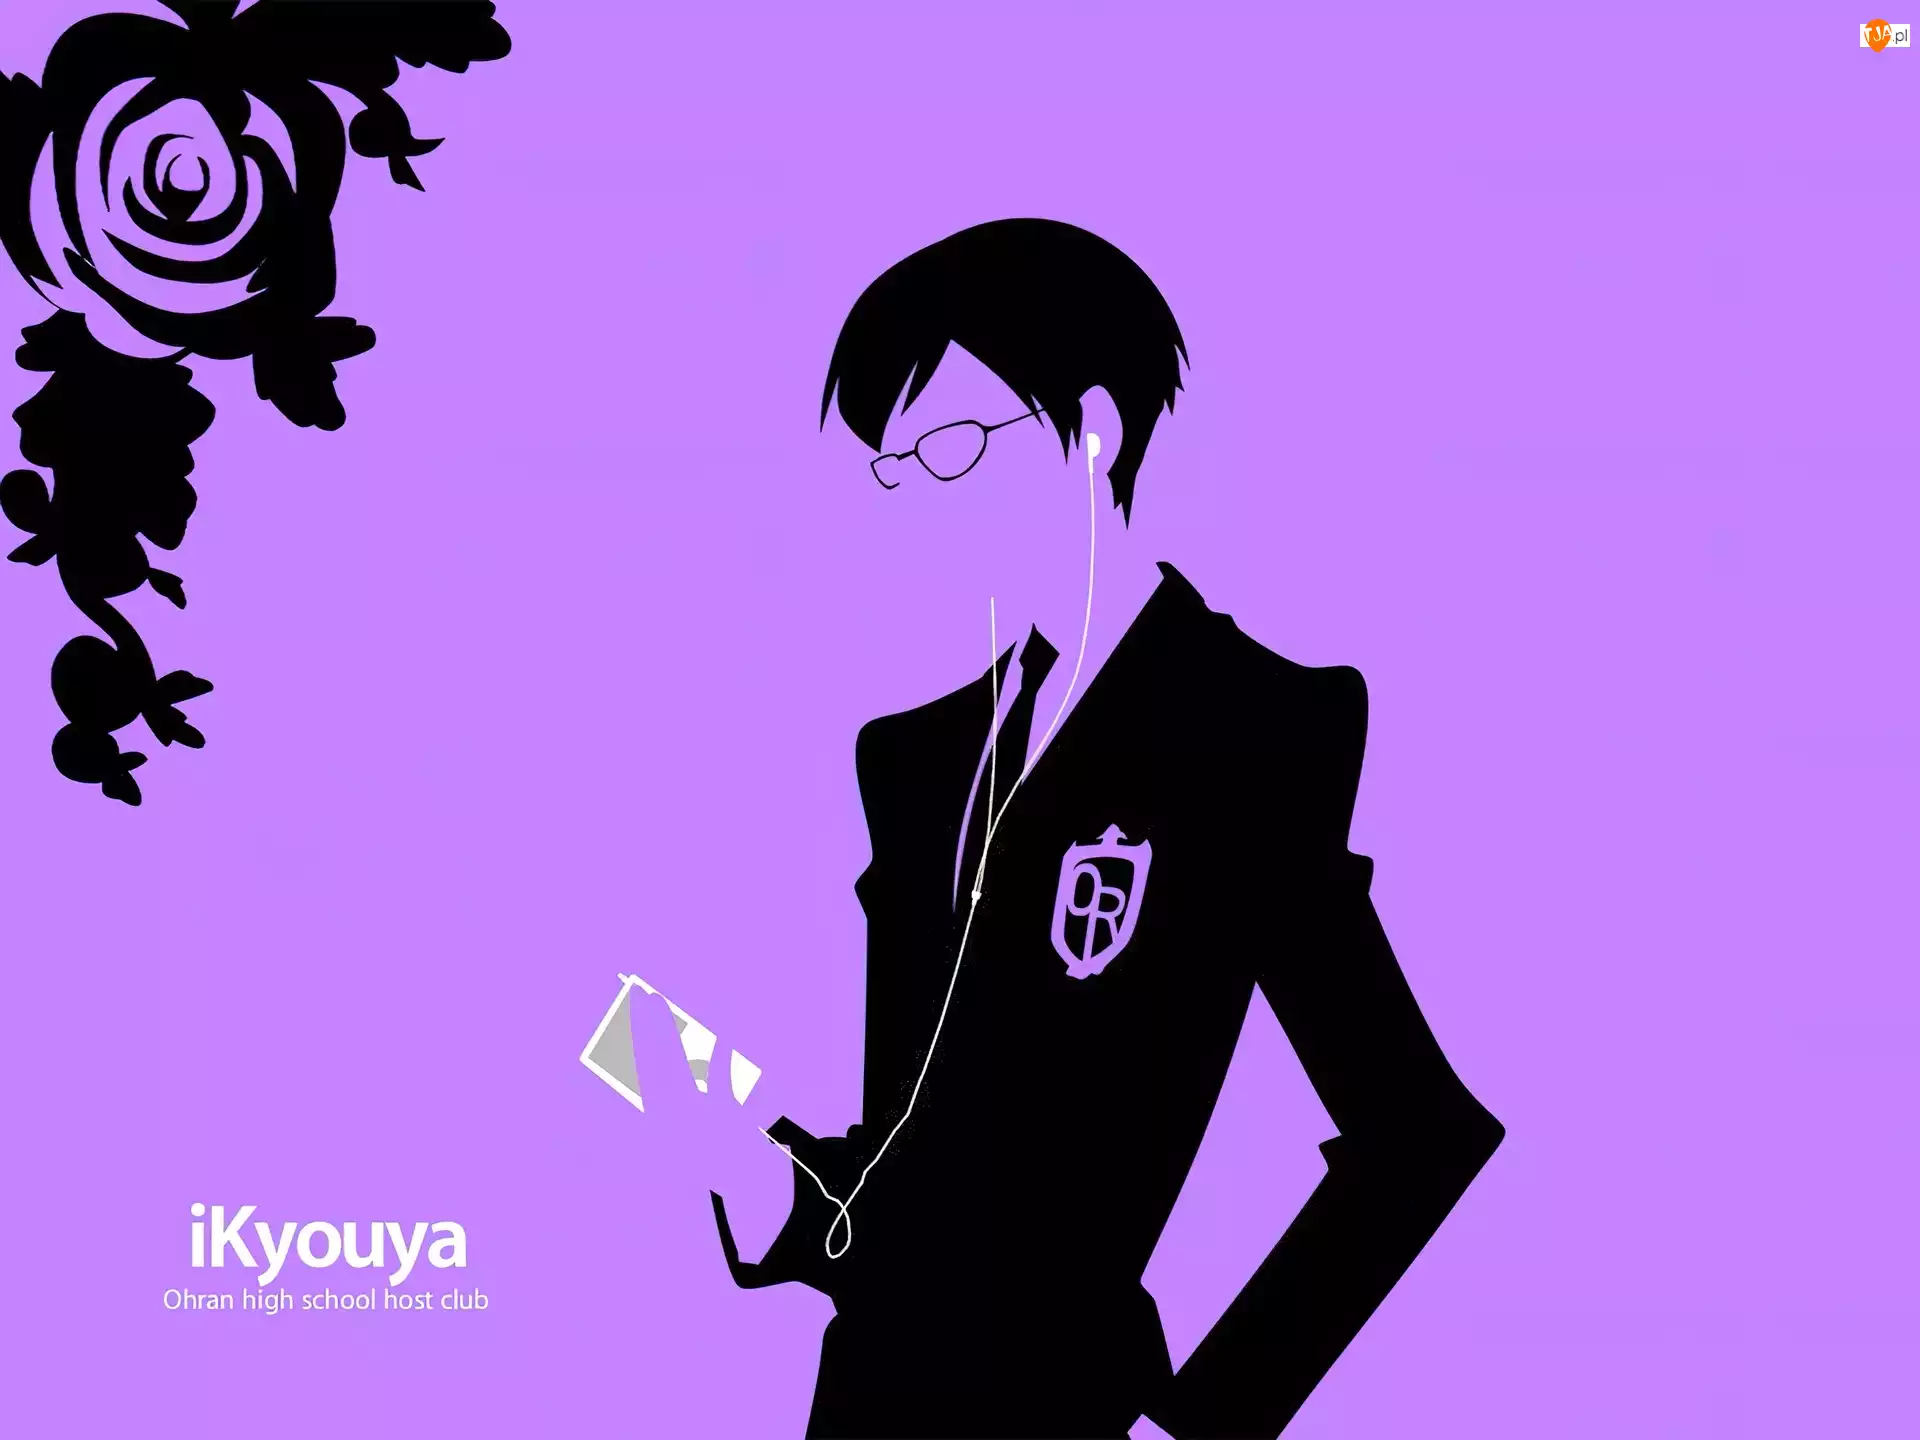 ipod, Ouran High School Host Club, ikyouya